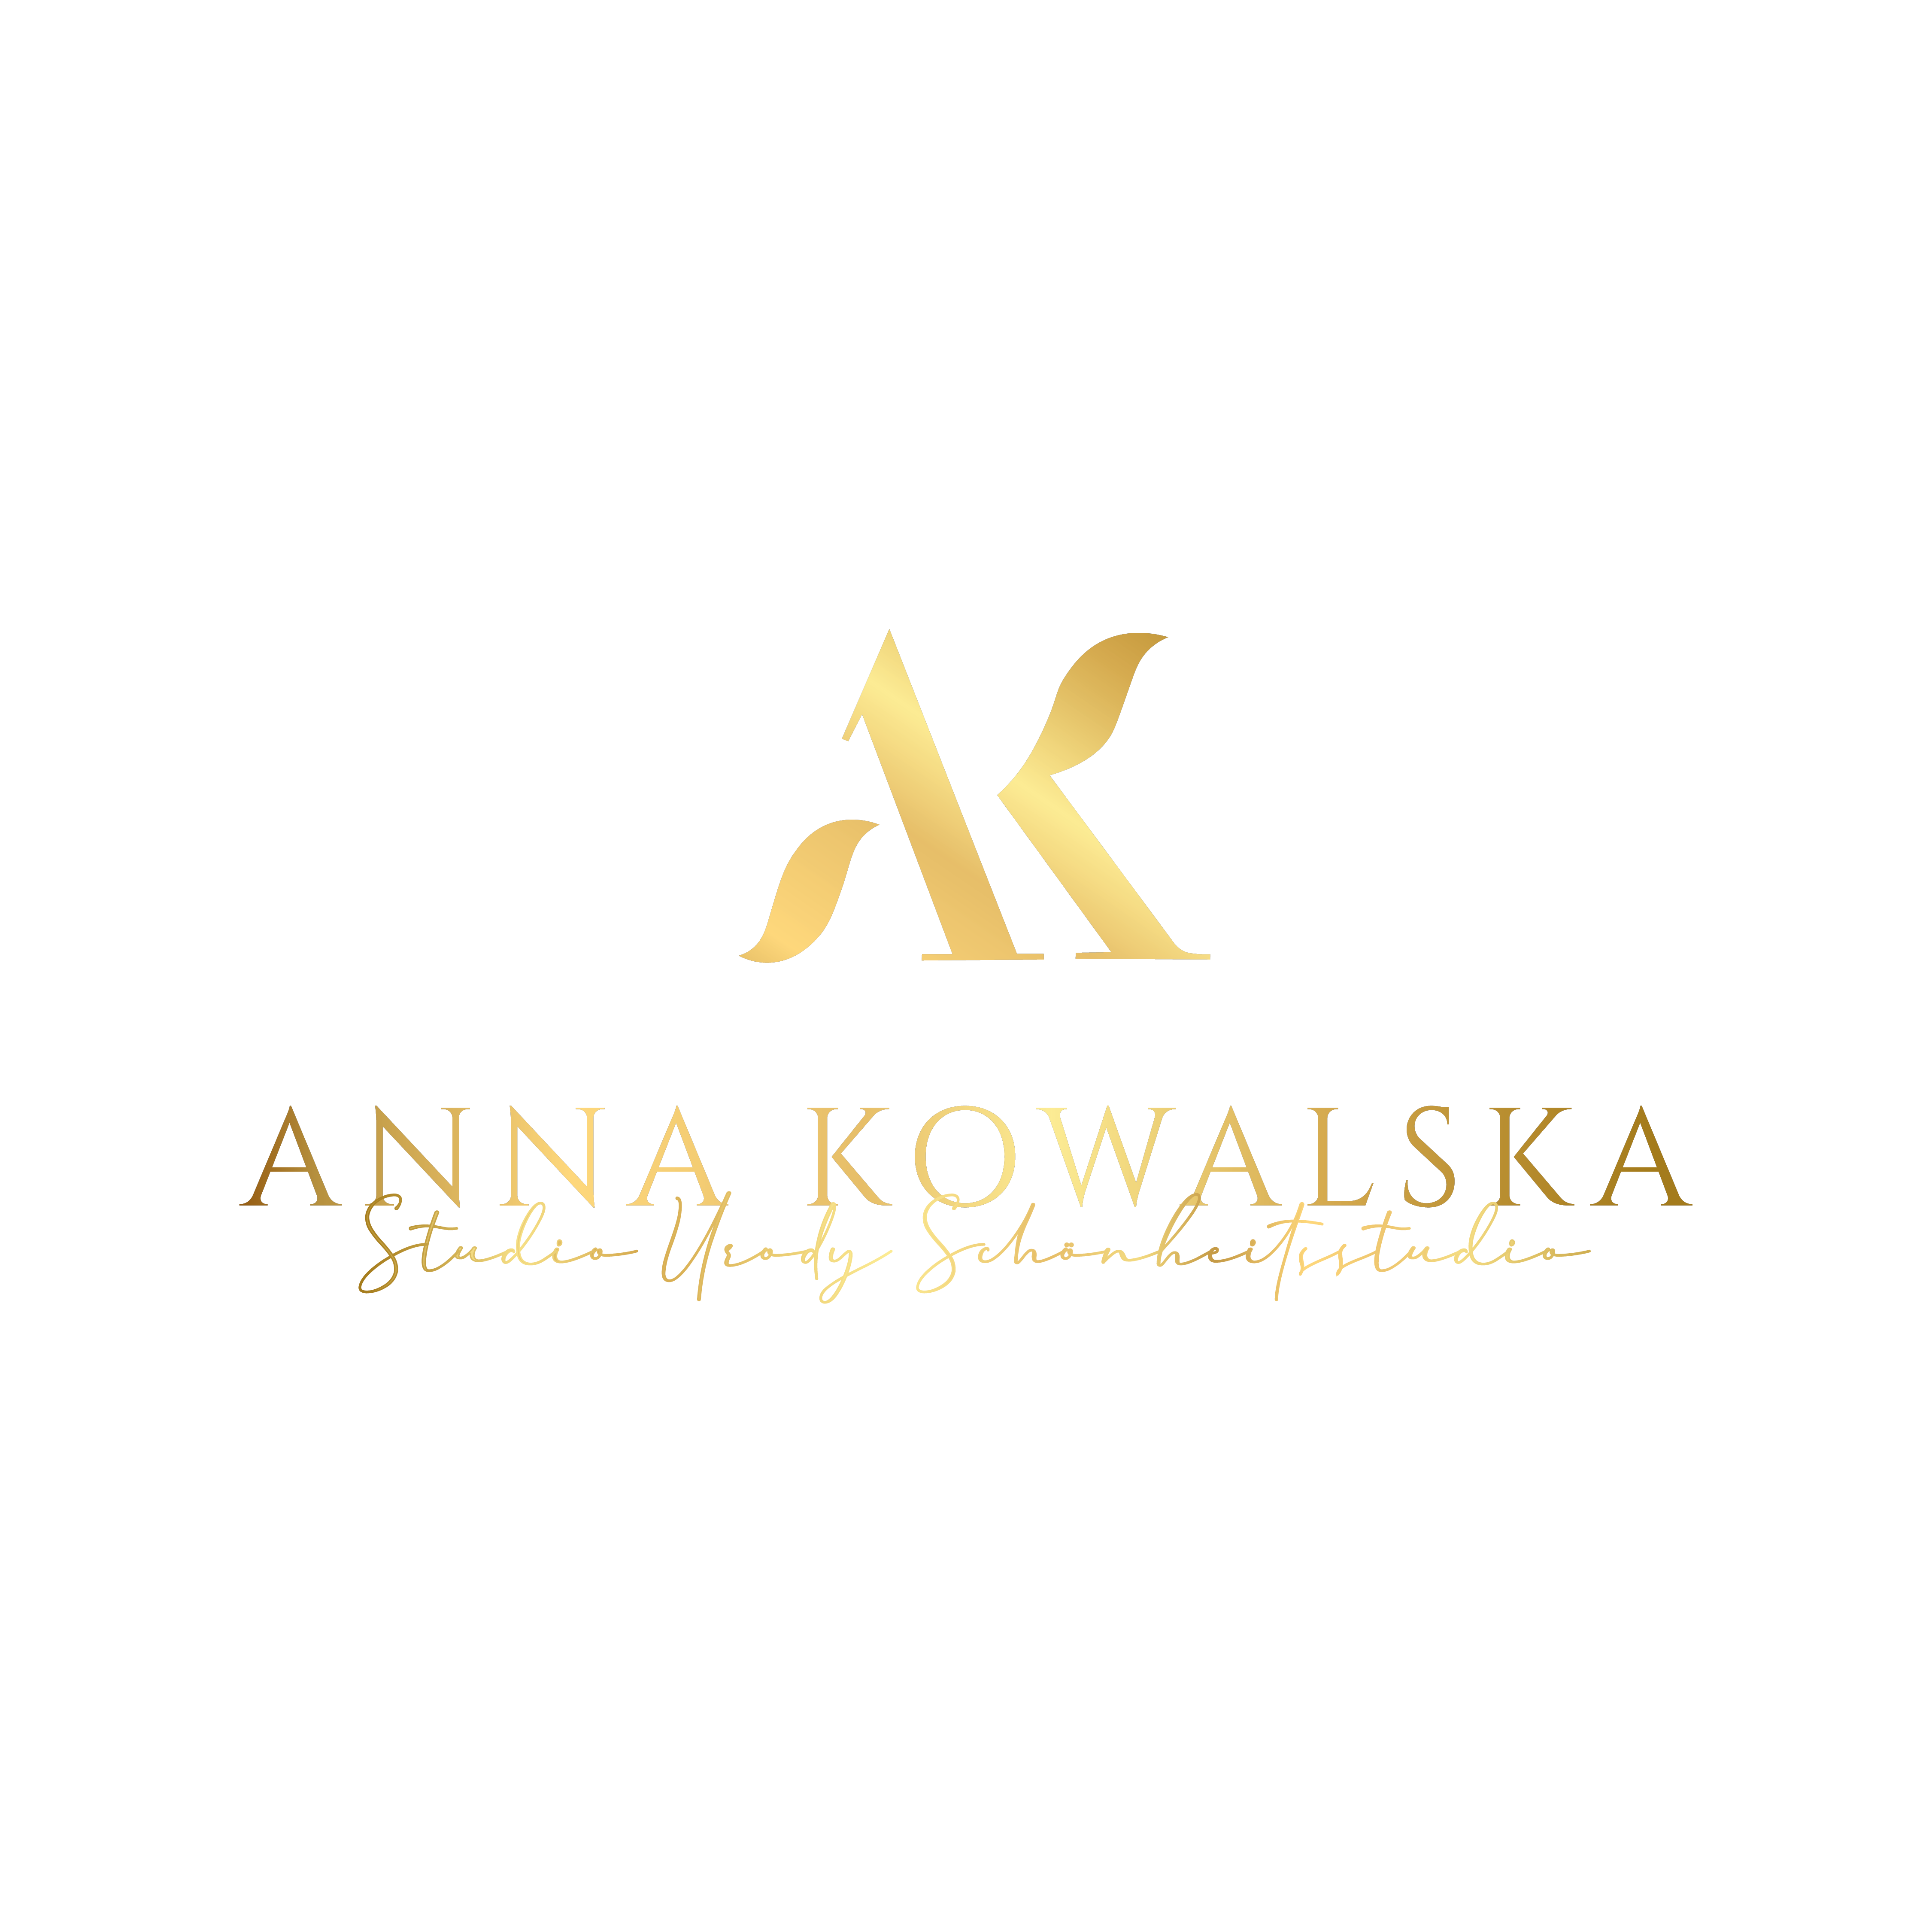 Anna Kowalksa